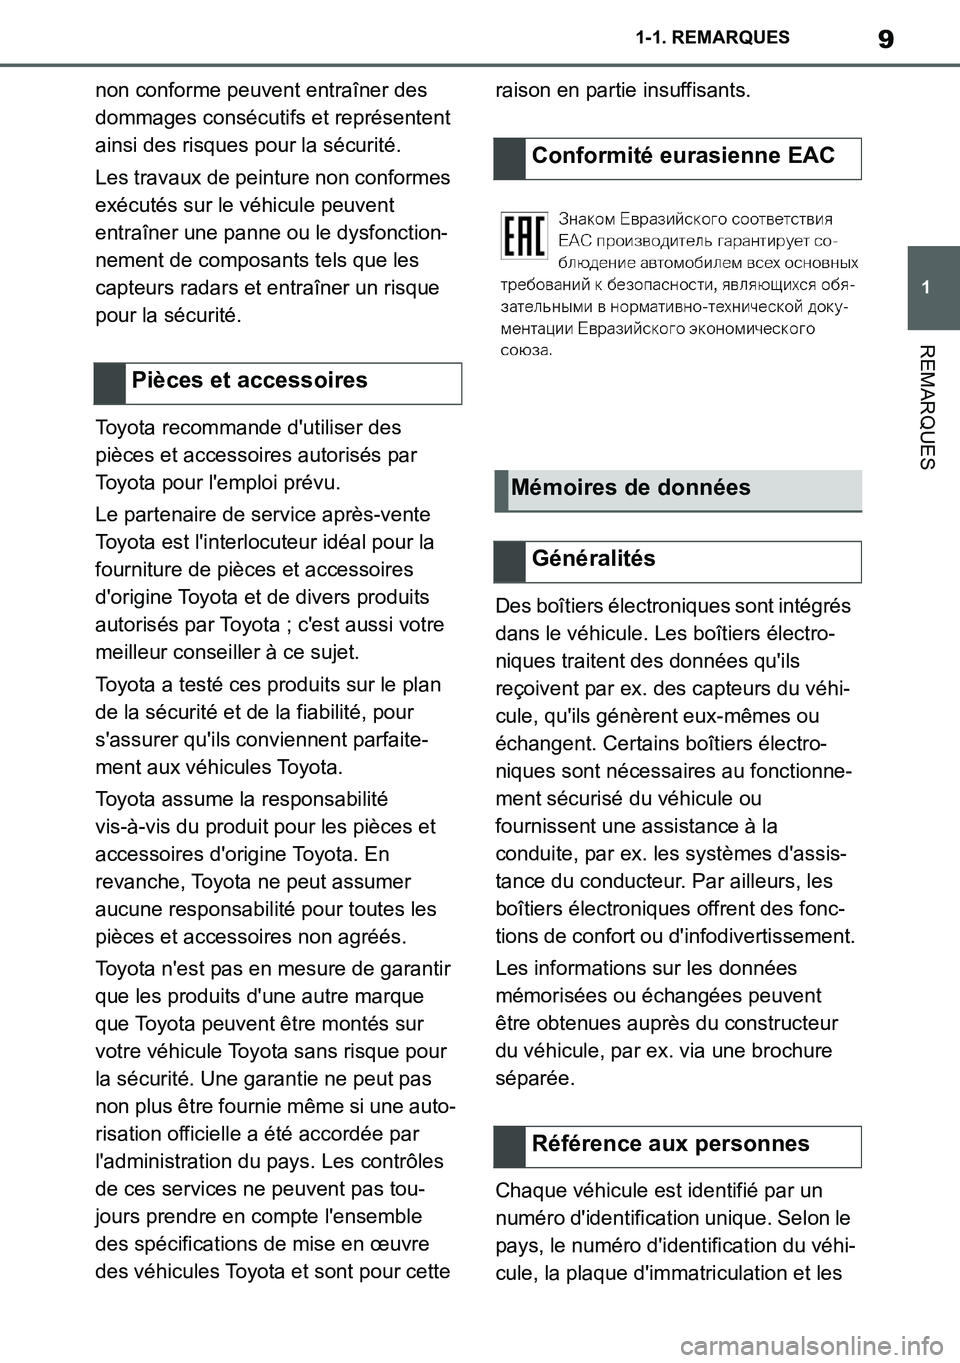 TOYOTA SUPRA 2020  Notices Demploi (in French) 9
1
Supra Owners Manual_EK
1-1. REMARQUES
REMARQUES
non conforme peuvent entraîner des 
dommages consécutifs et représentent 
ainsi des risques pour la sécurité.
Les travaux de peinture non conf